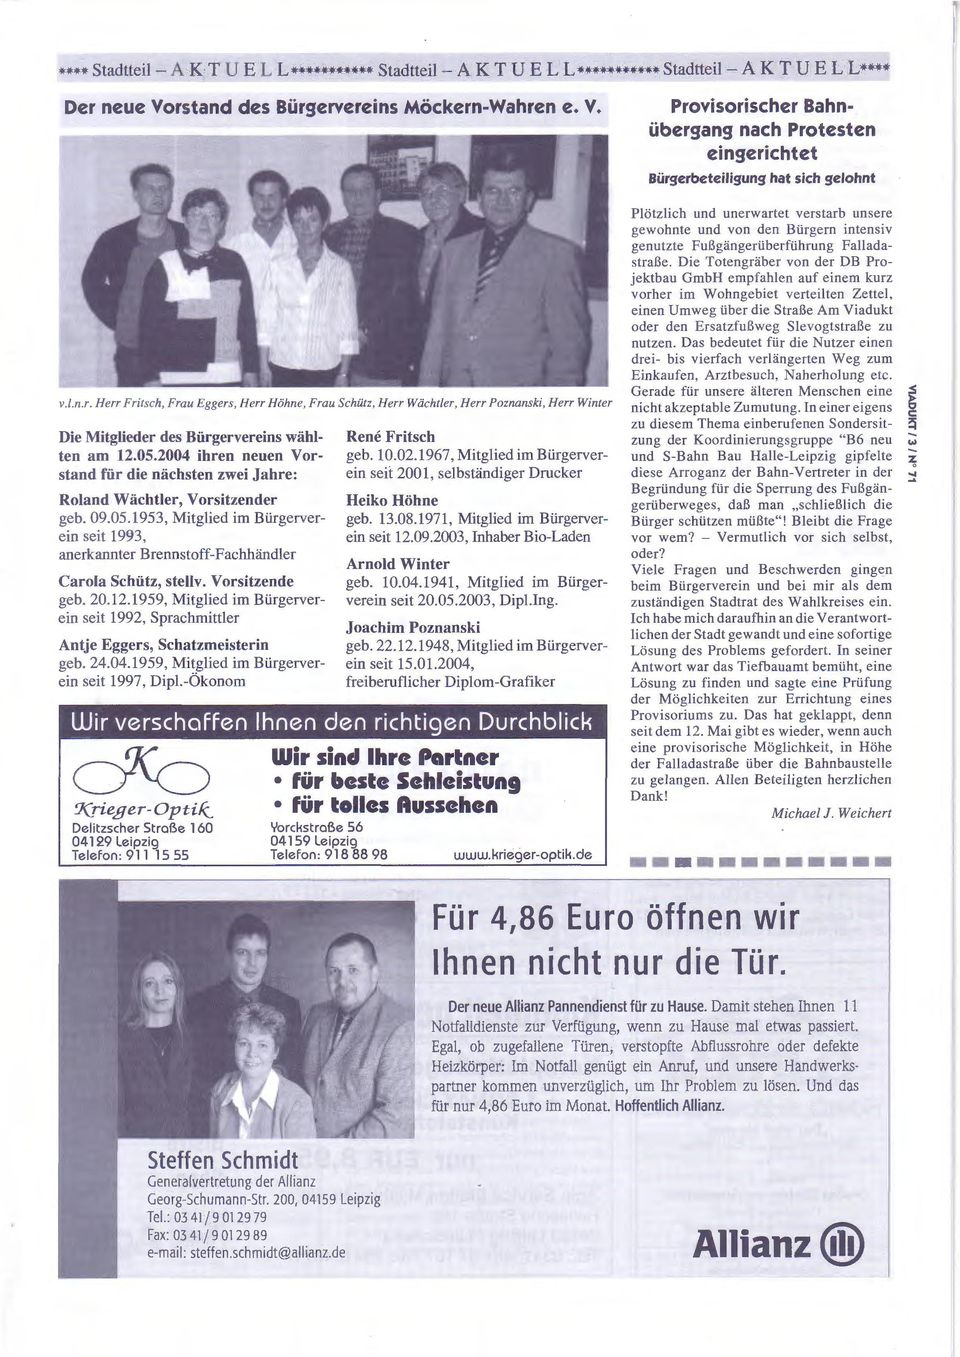 2004 ihren neuen Vorstand für die nächsten zwei Jahre: Roland Wächtler, Vorsitzender geb. 09.05.1953, Mitglied im Bürgerverein seit 1993, anerkannter Brennstoff-Fachhändler Carola Schütz, stellv.